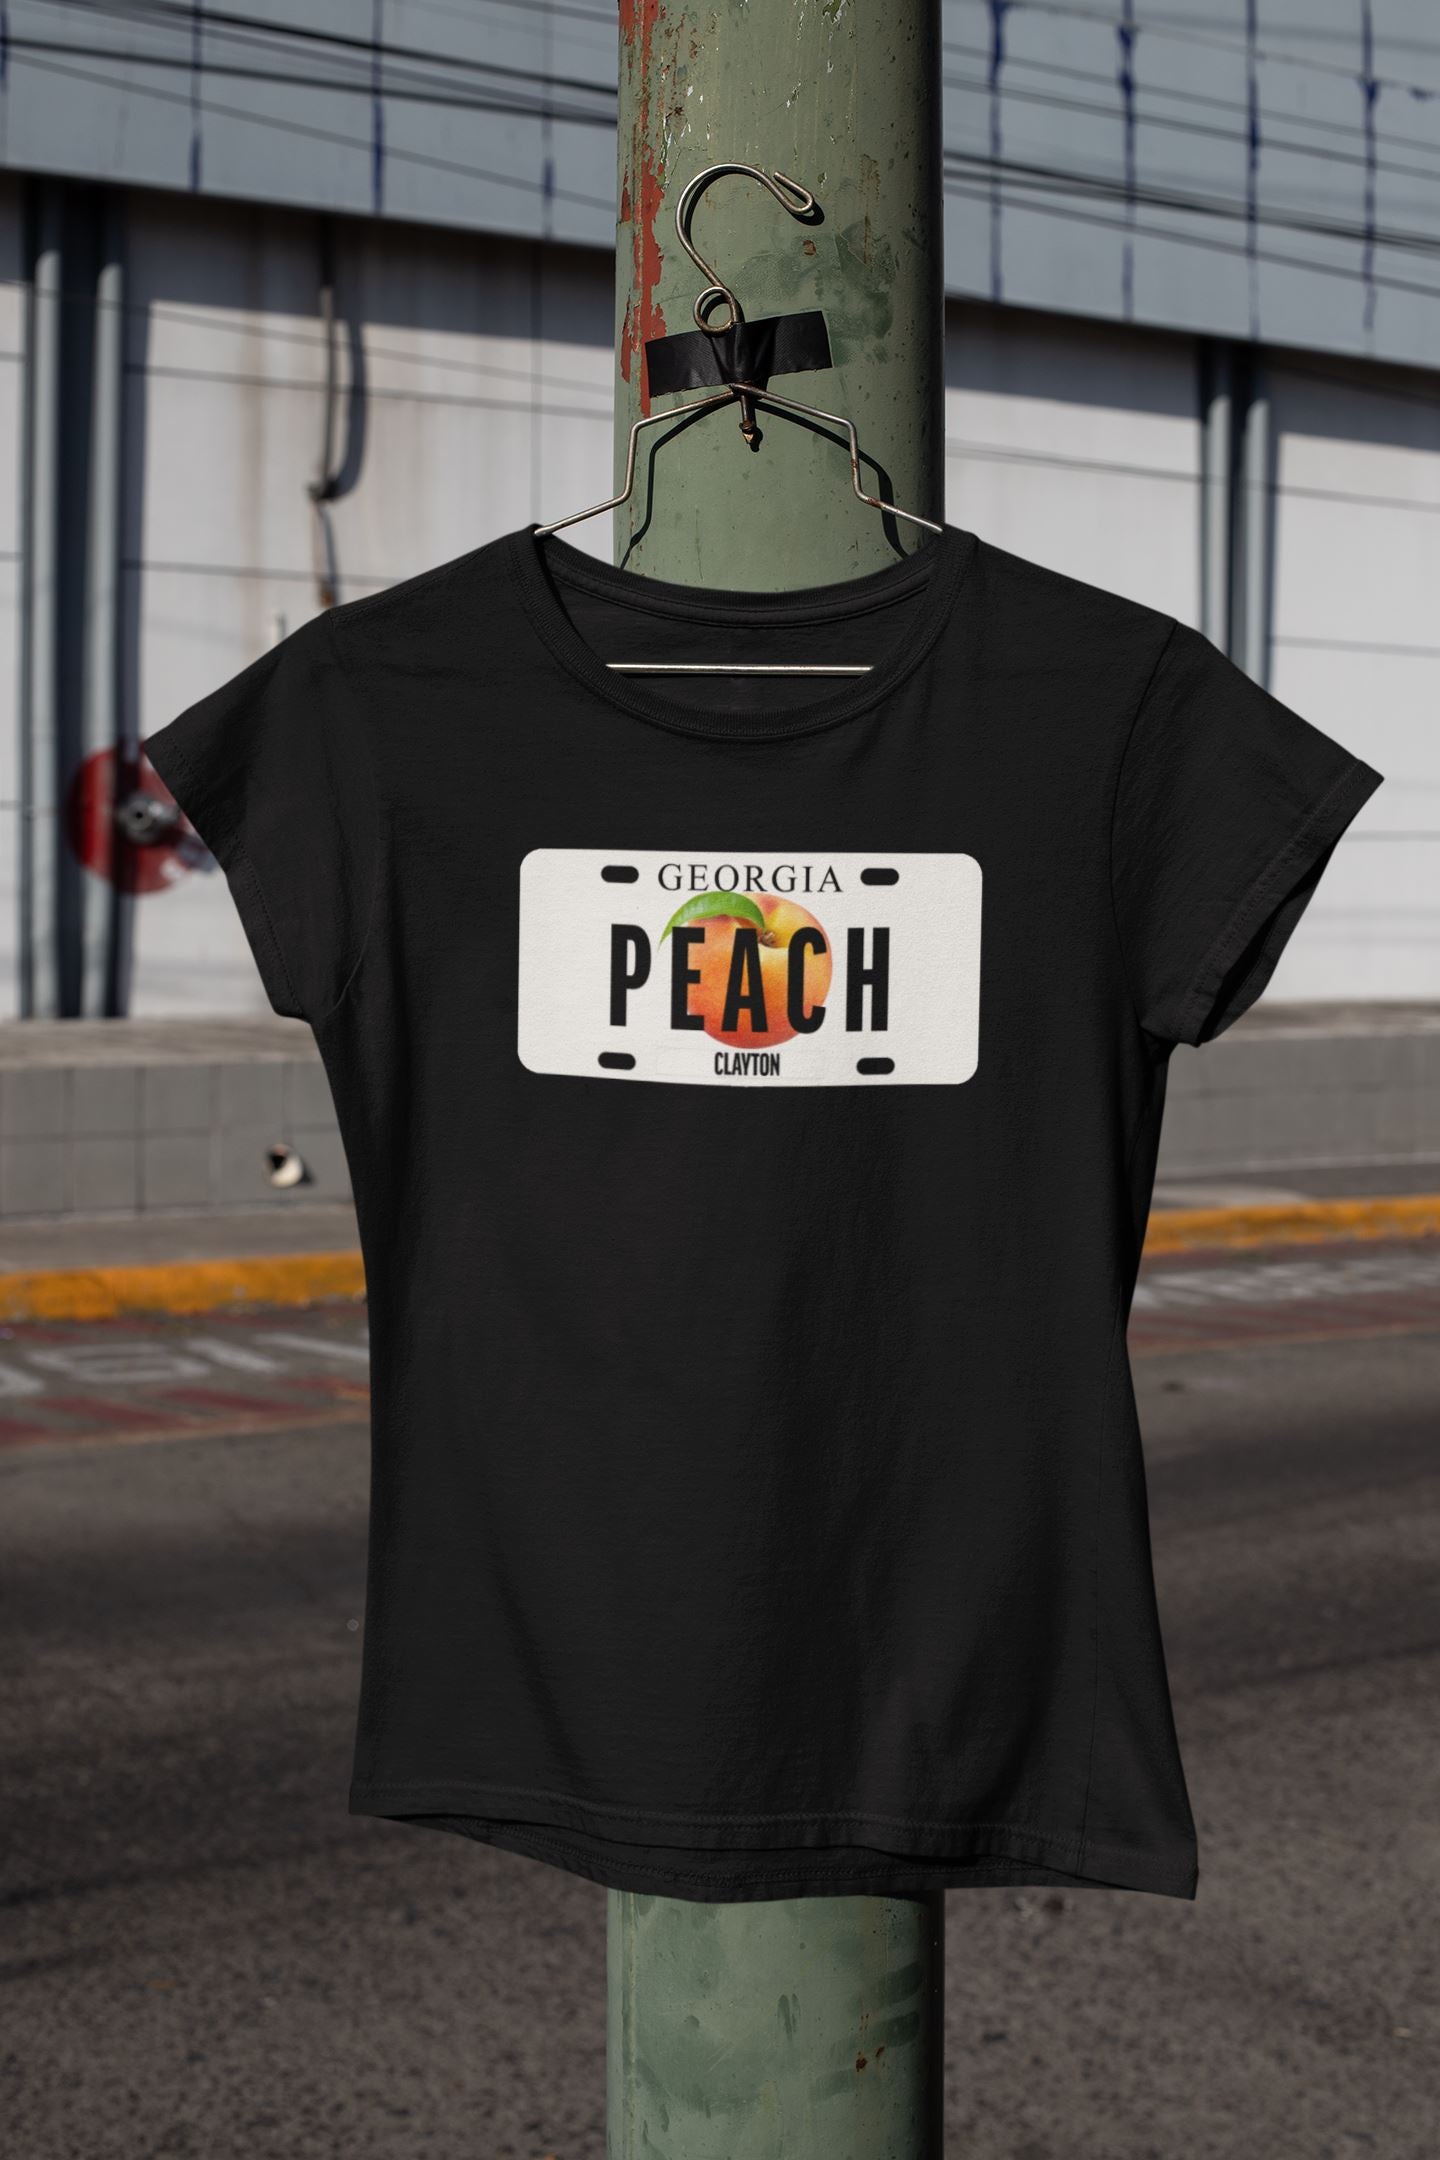 Georgia Peach T-Shirt, Georgia Girl, License Plate Themed Shirt B1ack By Design LLC 